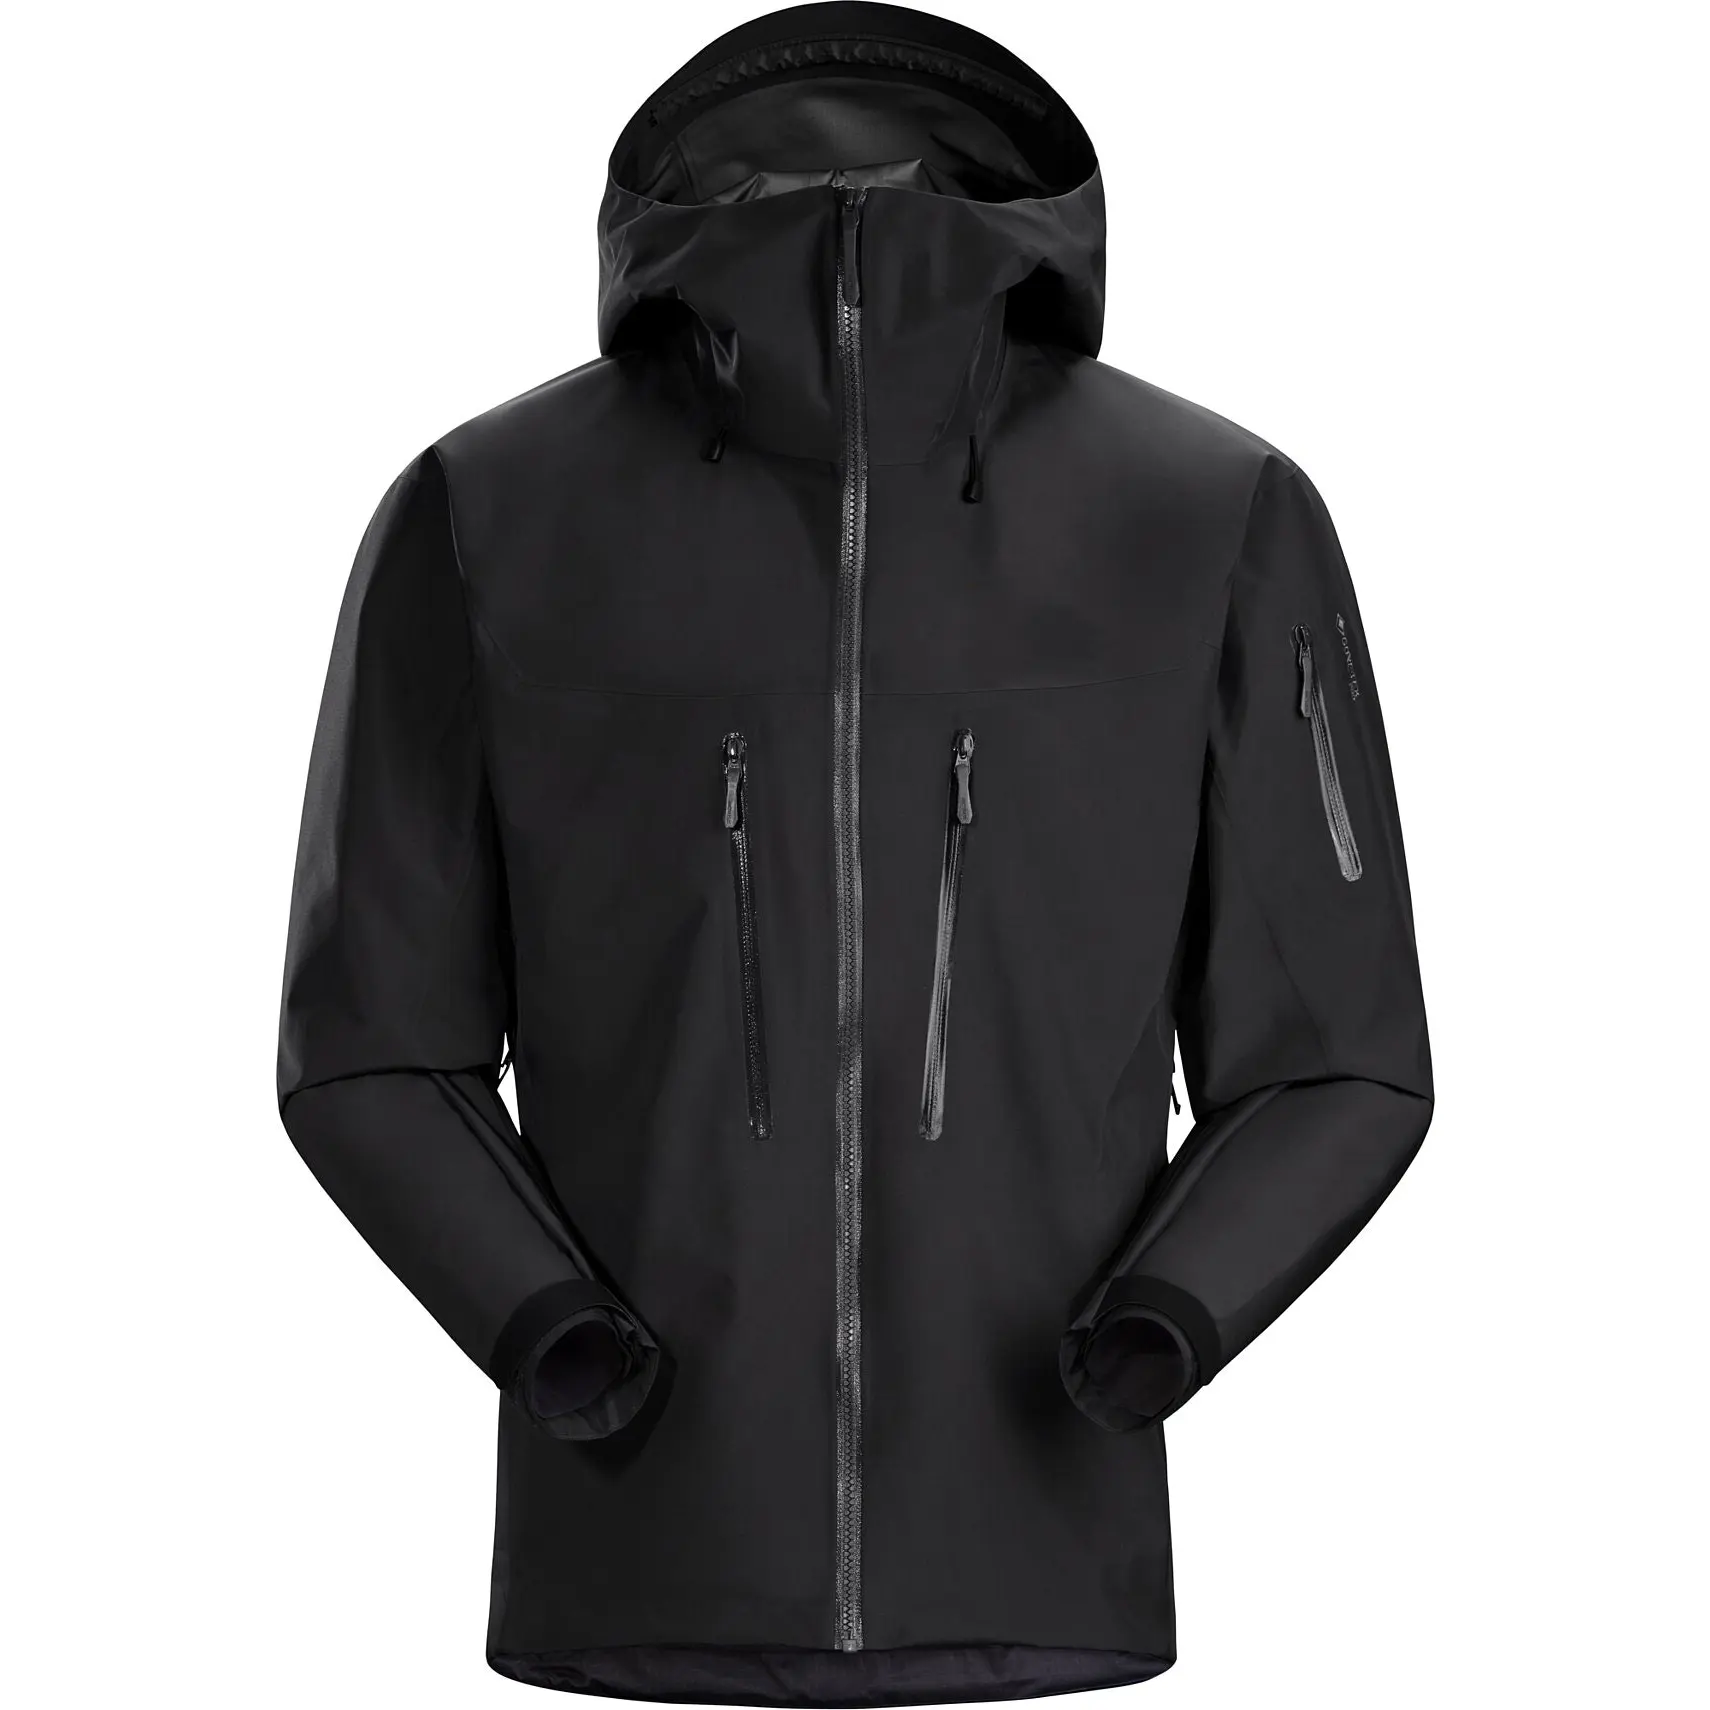 Jacket Men's Wholesale Hooded Rain Jacket Men's Wholesale Outdoor Raincoat Lightweight Waterproof